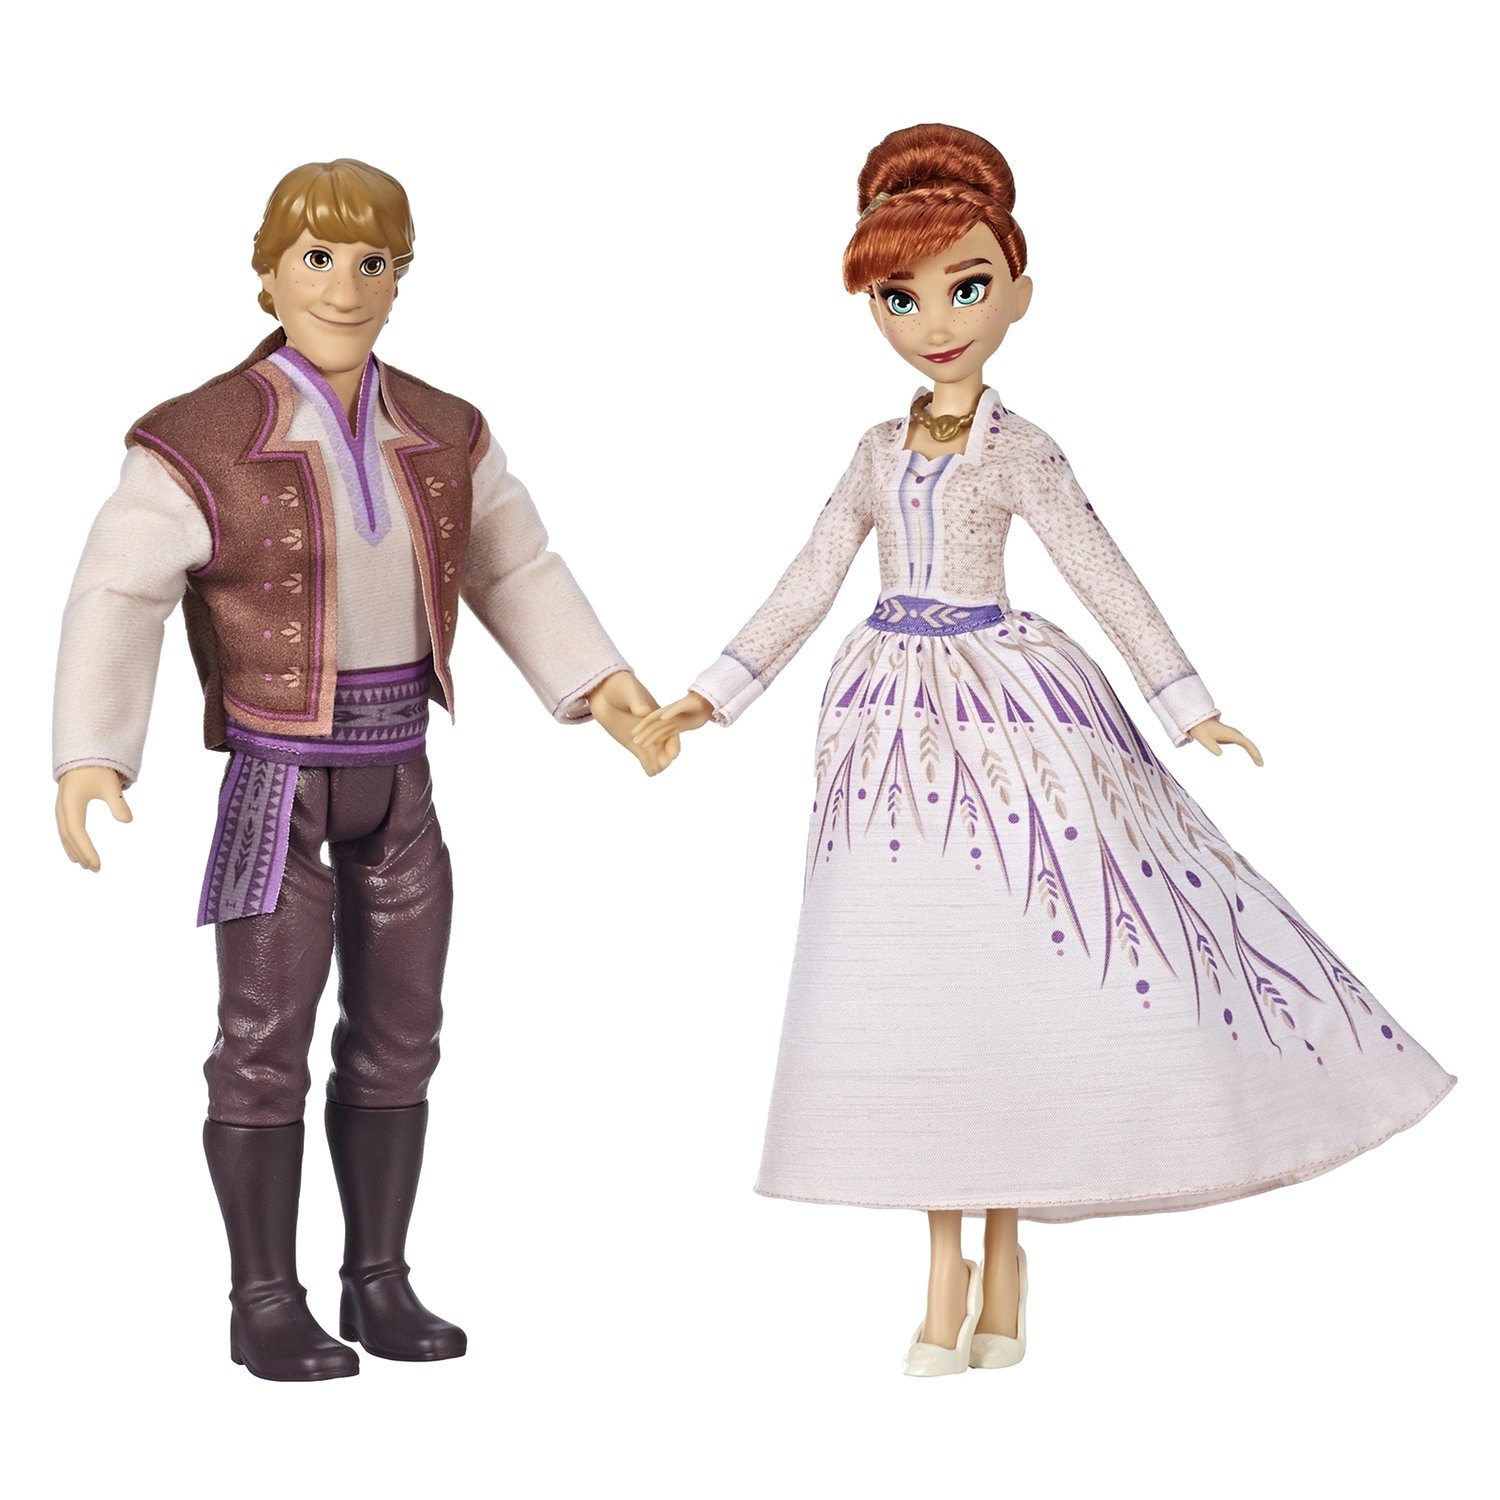 Набор Disney Frozen E5502EU4 Холодное cердце 2 Анна и Кристофф